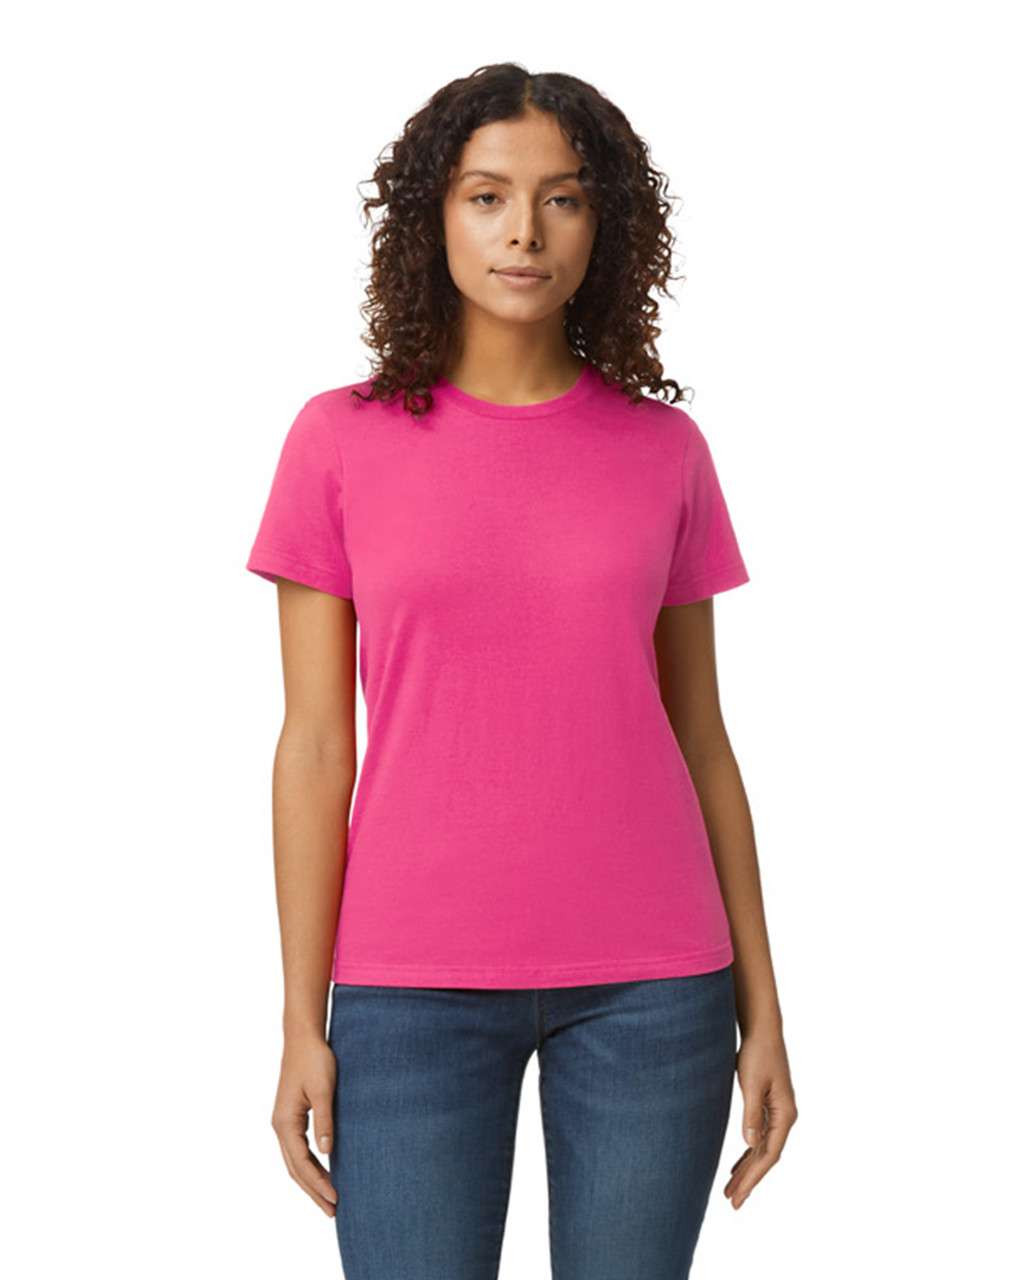 Gildan Softstyle® Midweight Women's T-shirt - pink